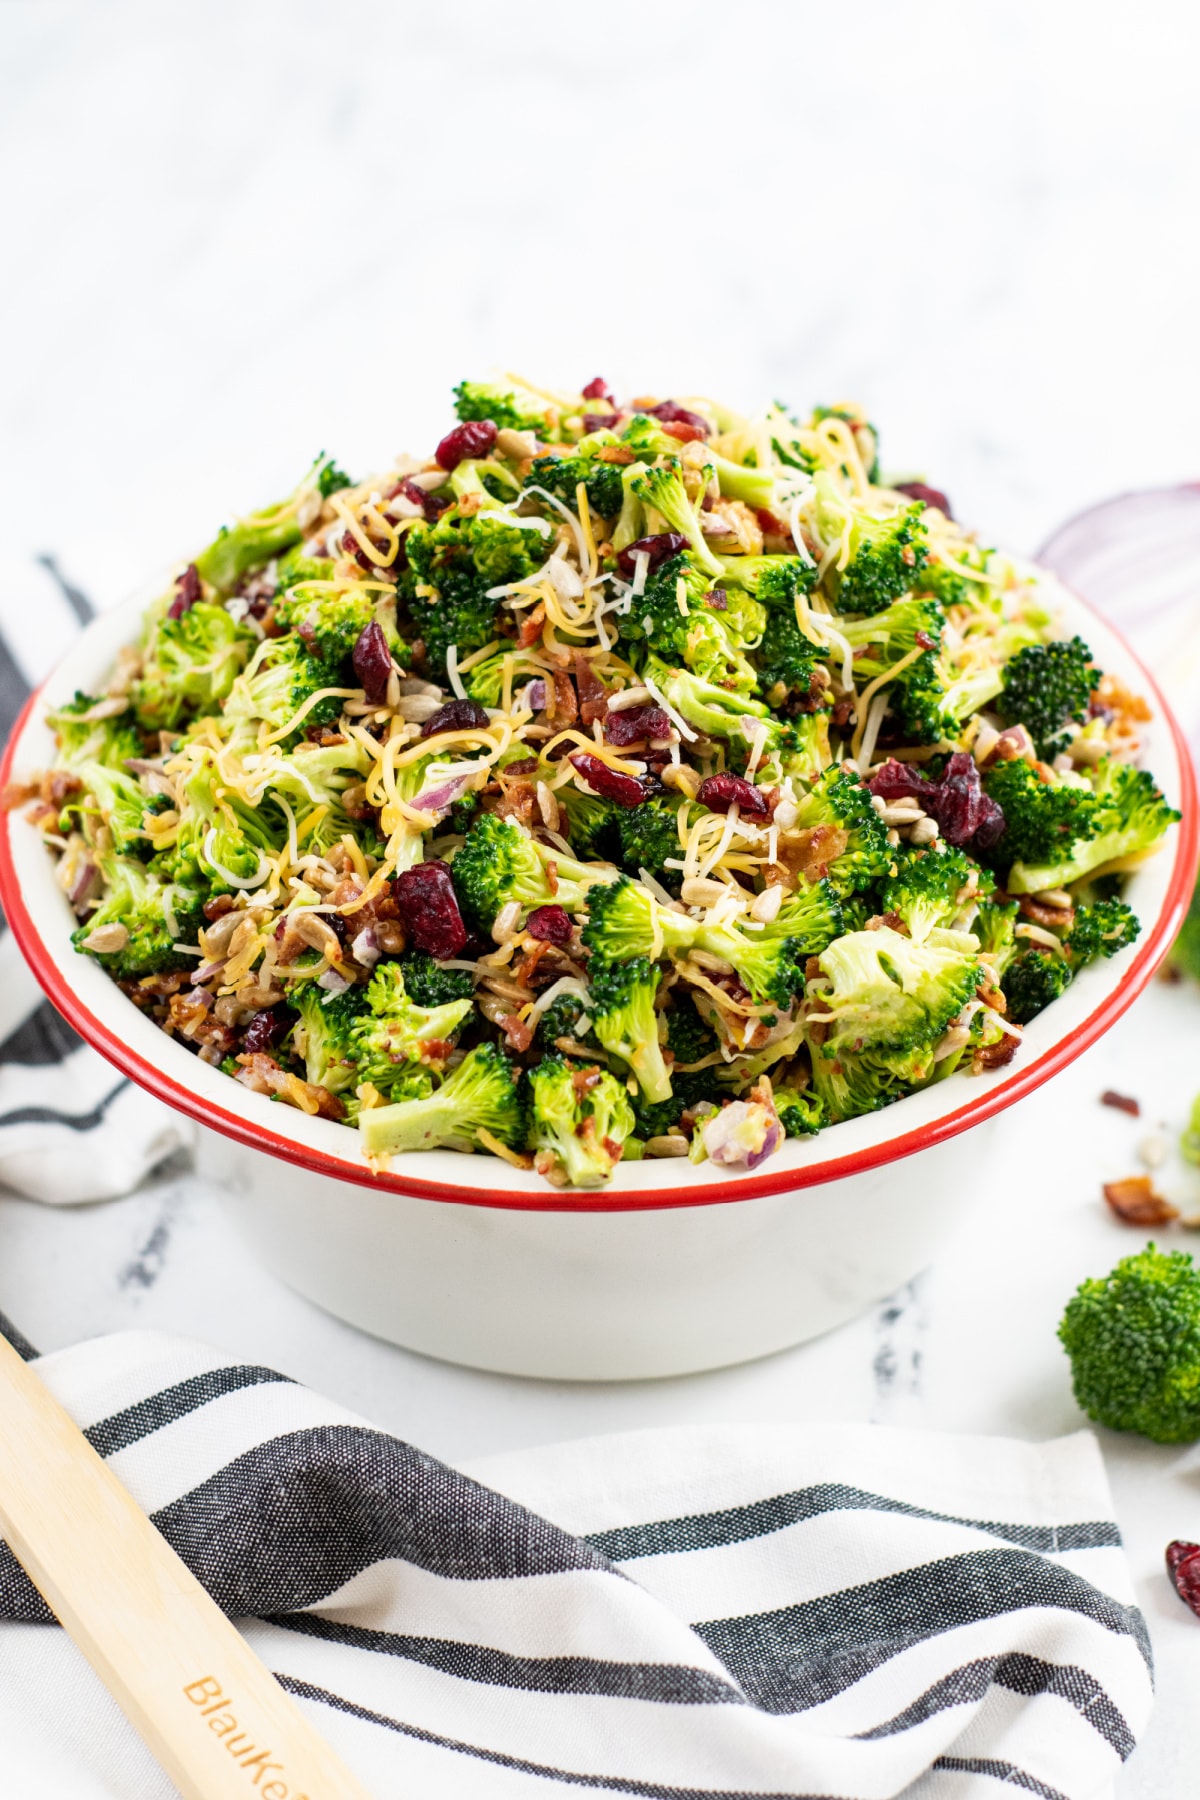 Easy broccoli salad with craisins